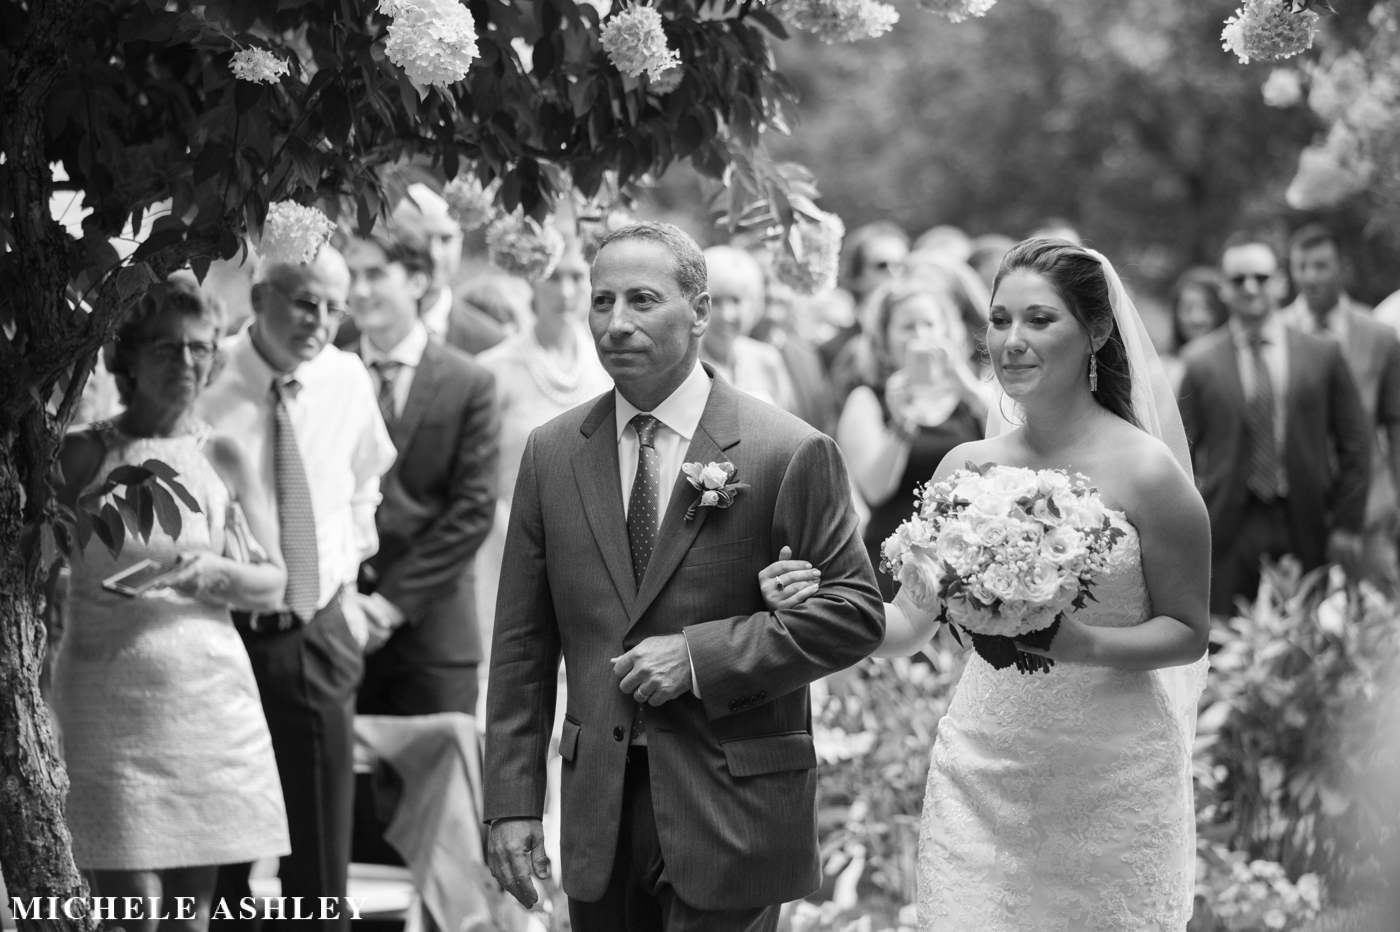 Chesterwood Wedding Photographer | Michele Ashley Photography